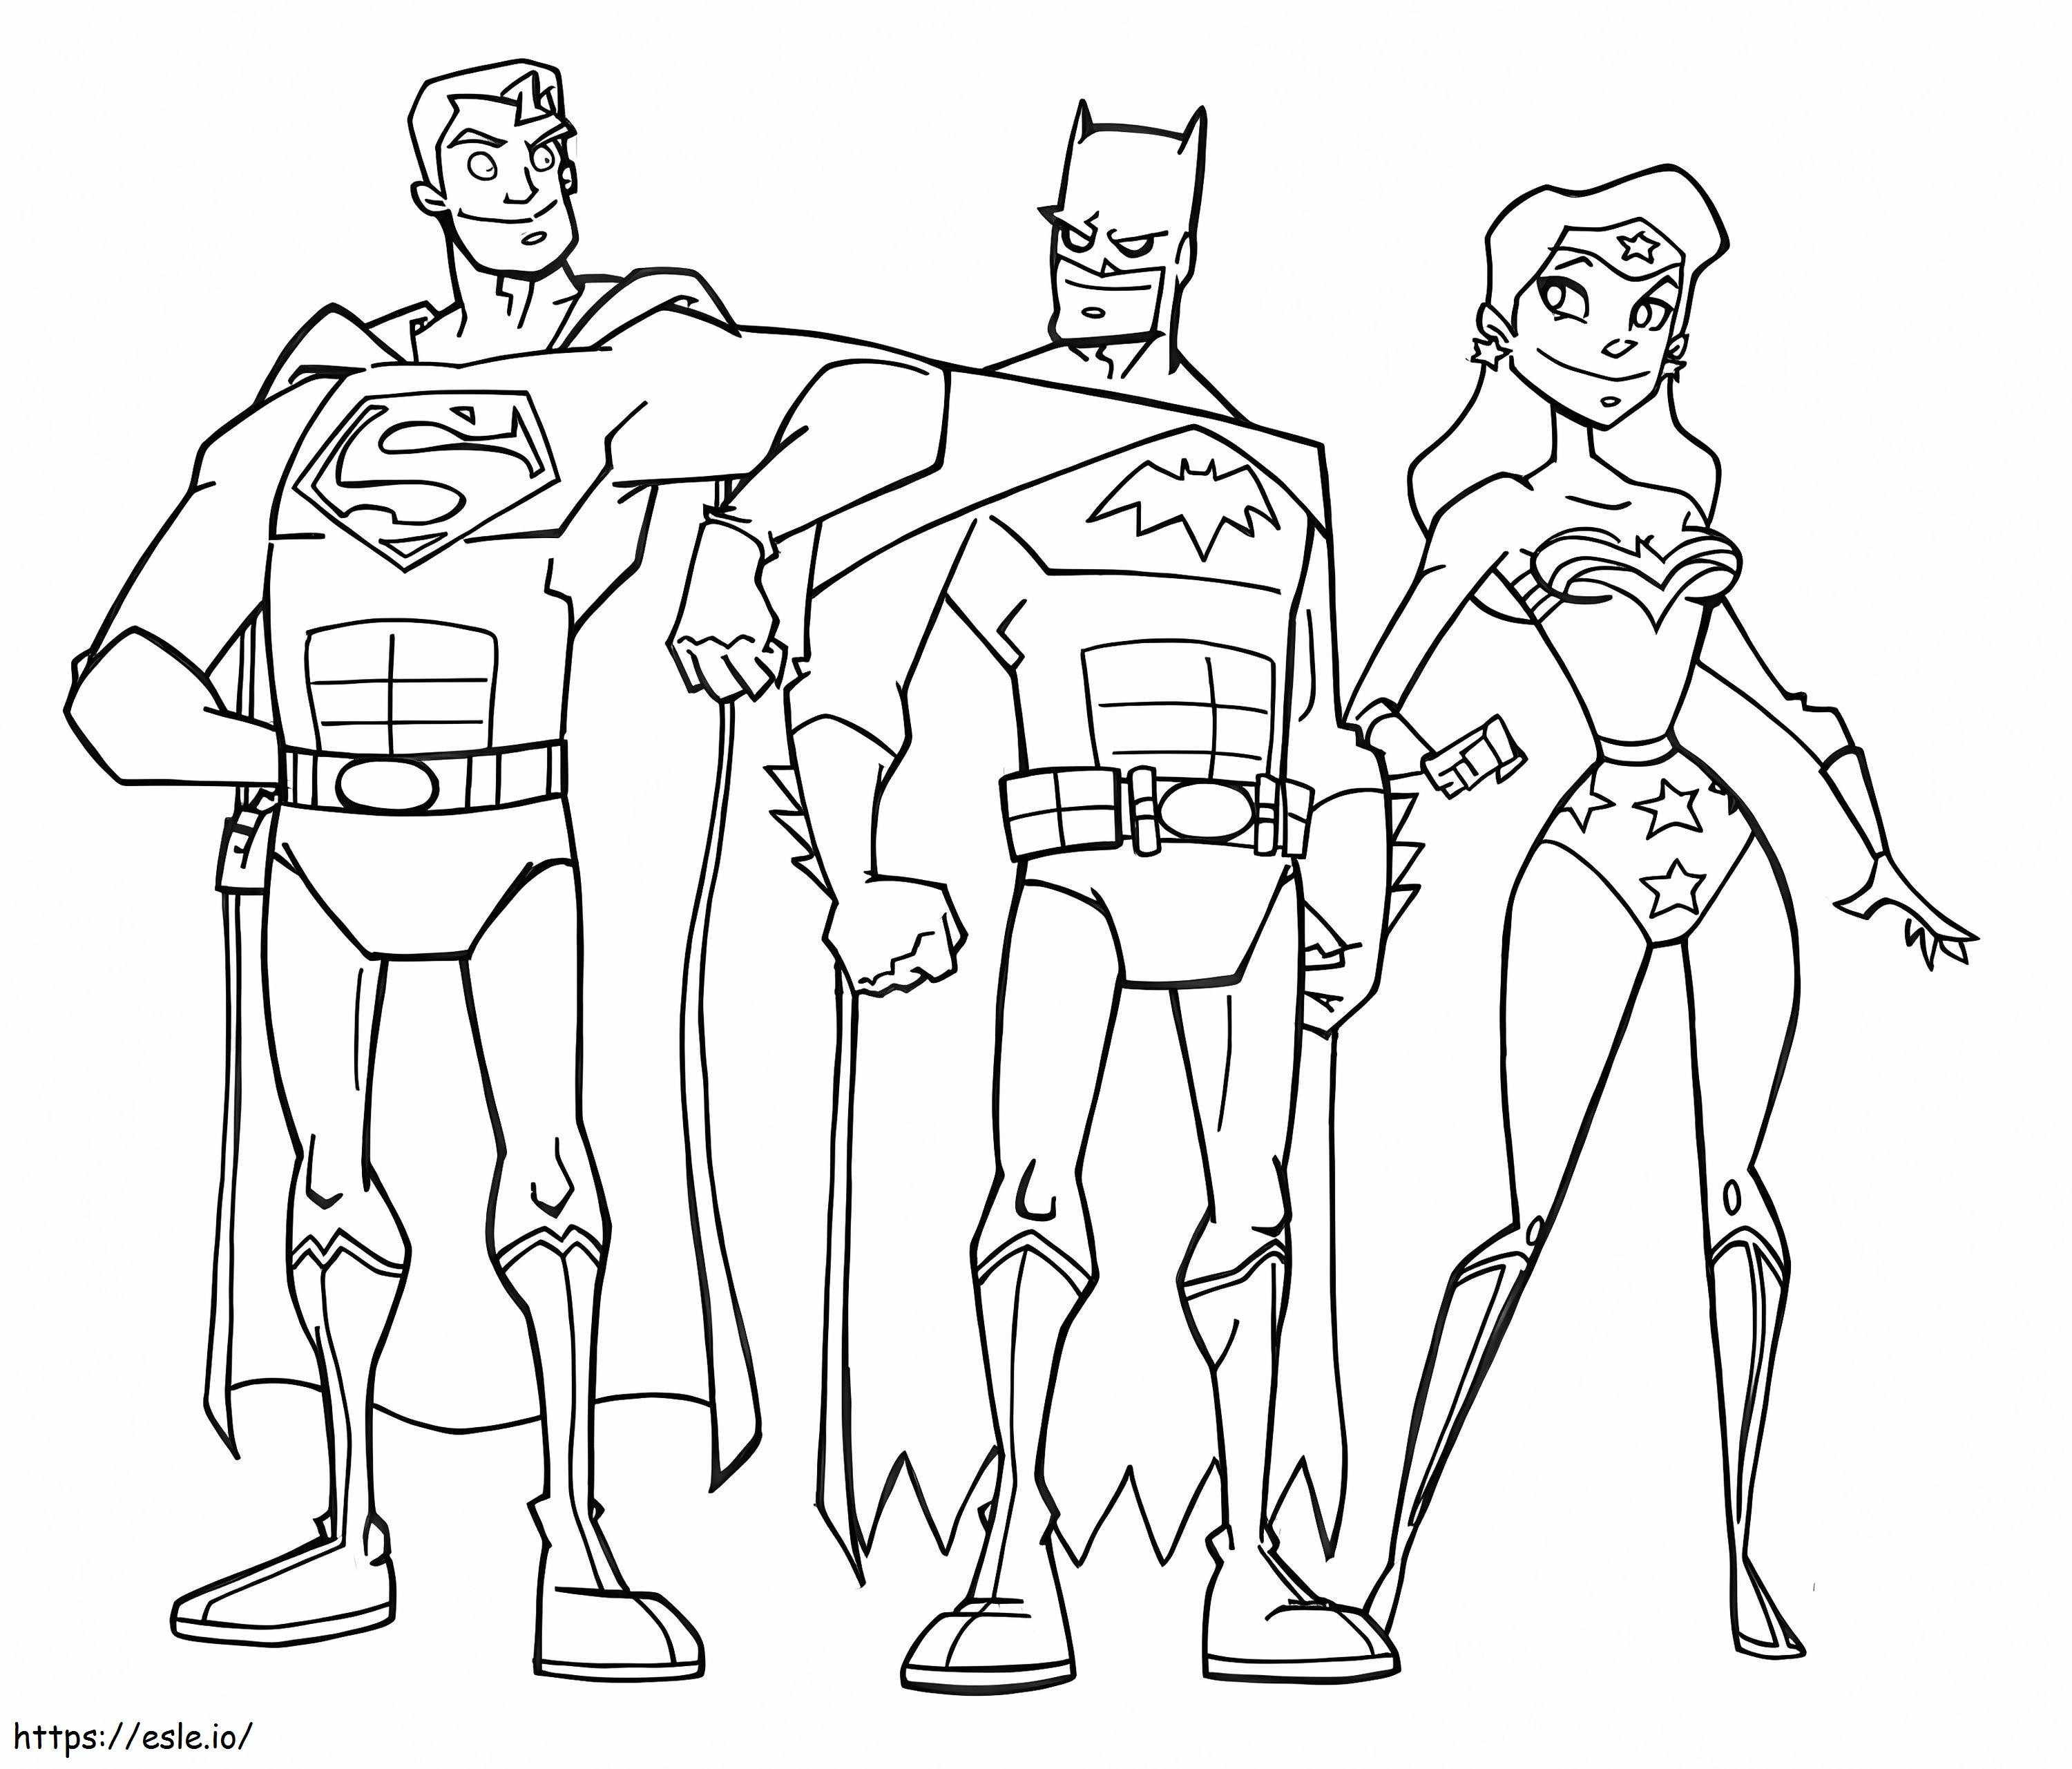  Bilder der Justice League ausmalbilder